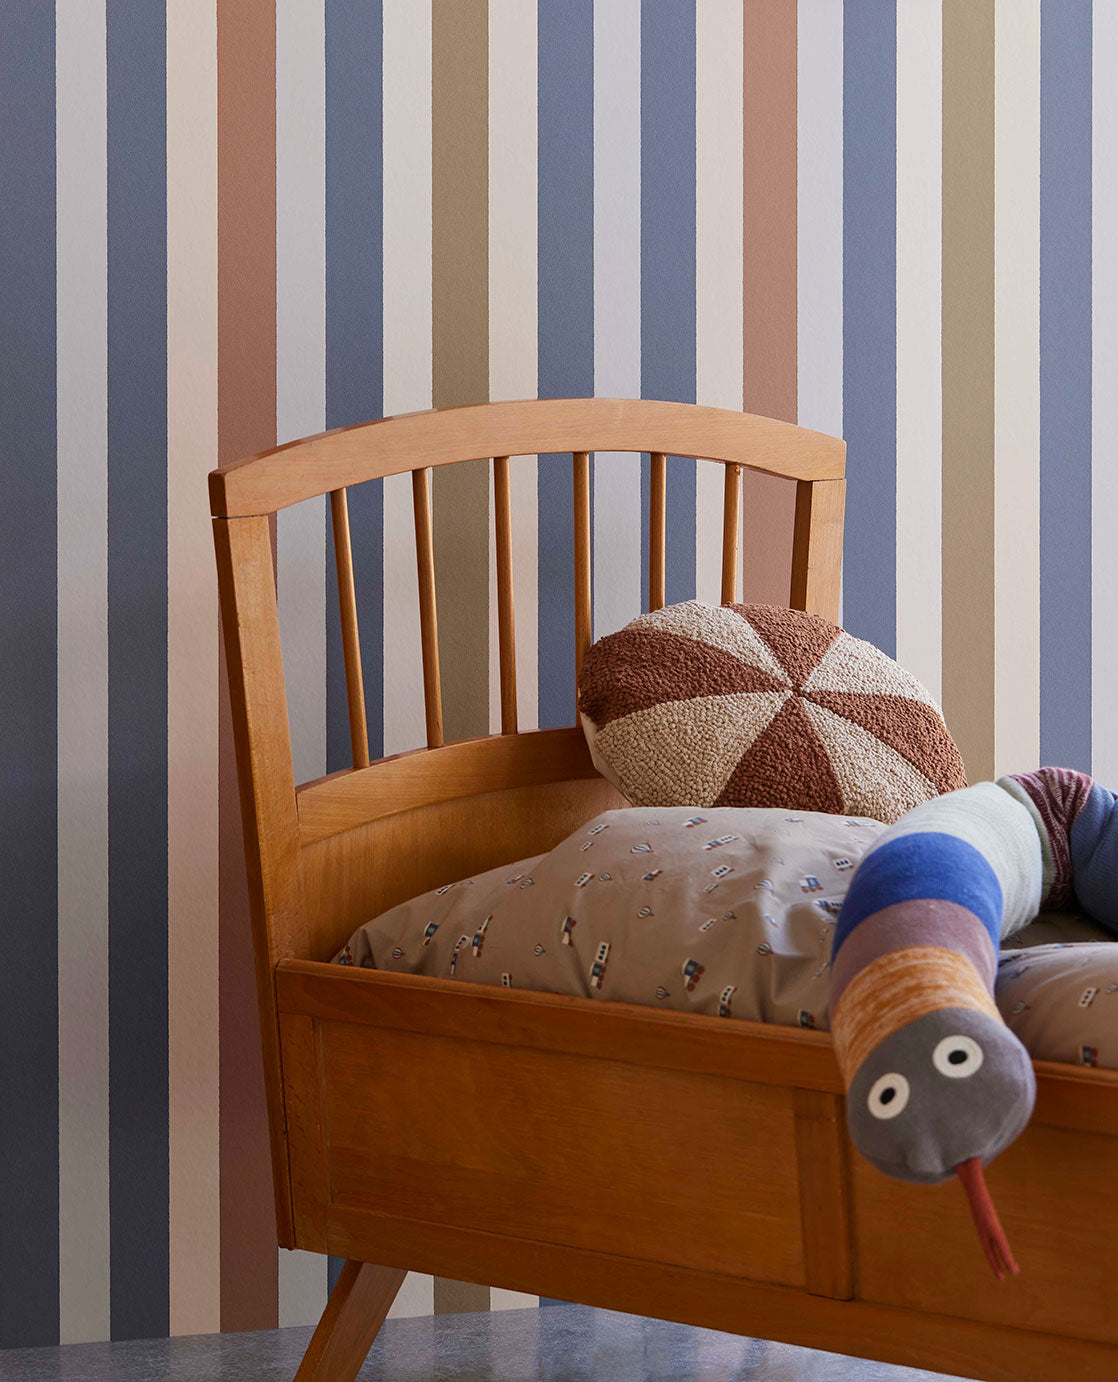 Explore Multi-colour Stripe wallpaper